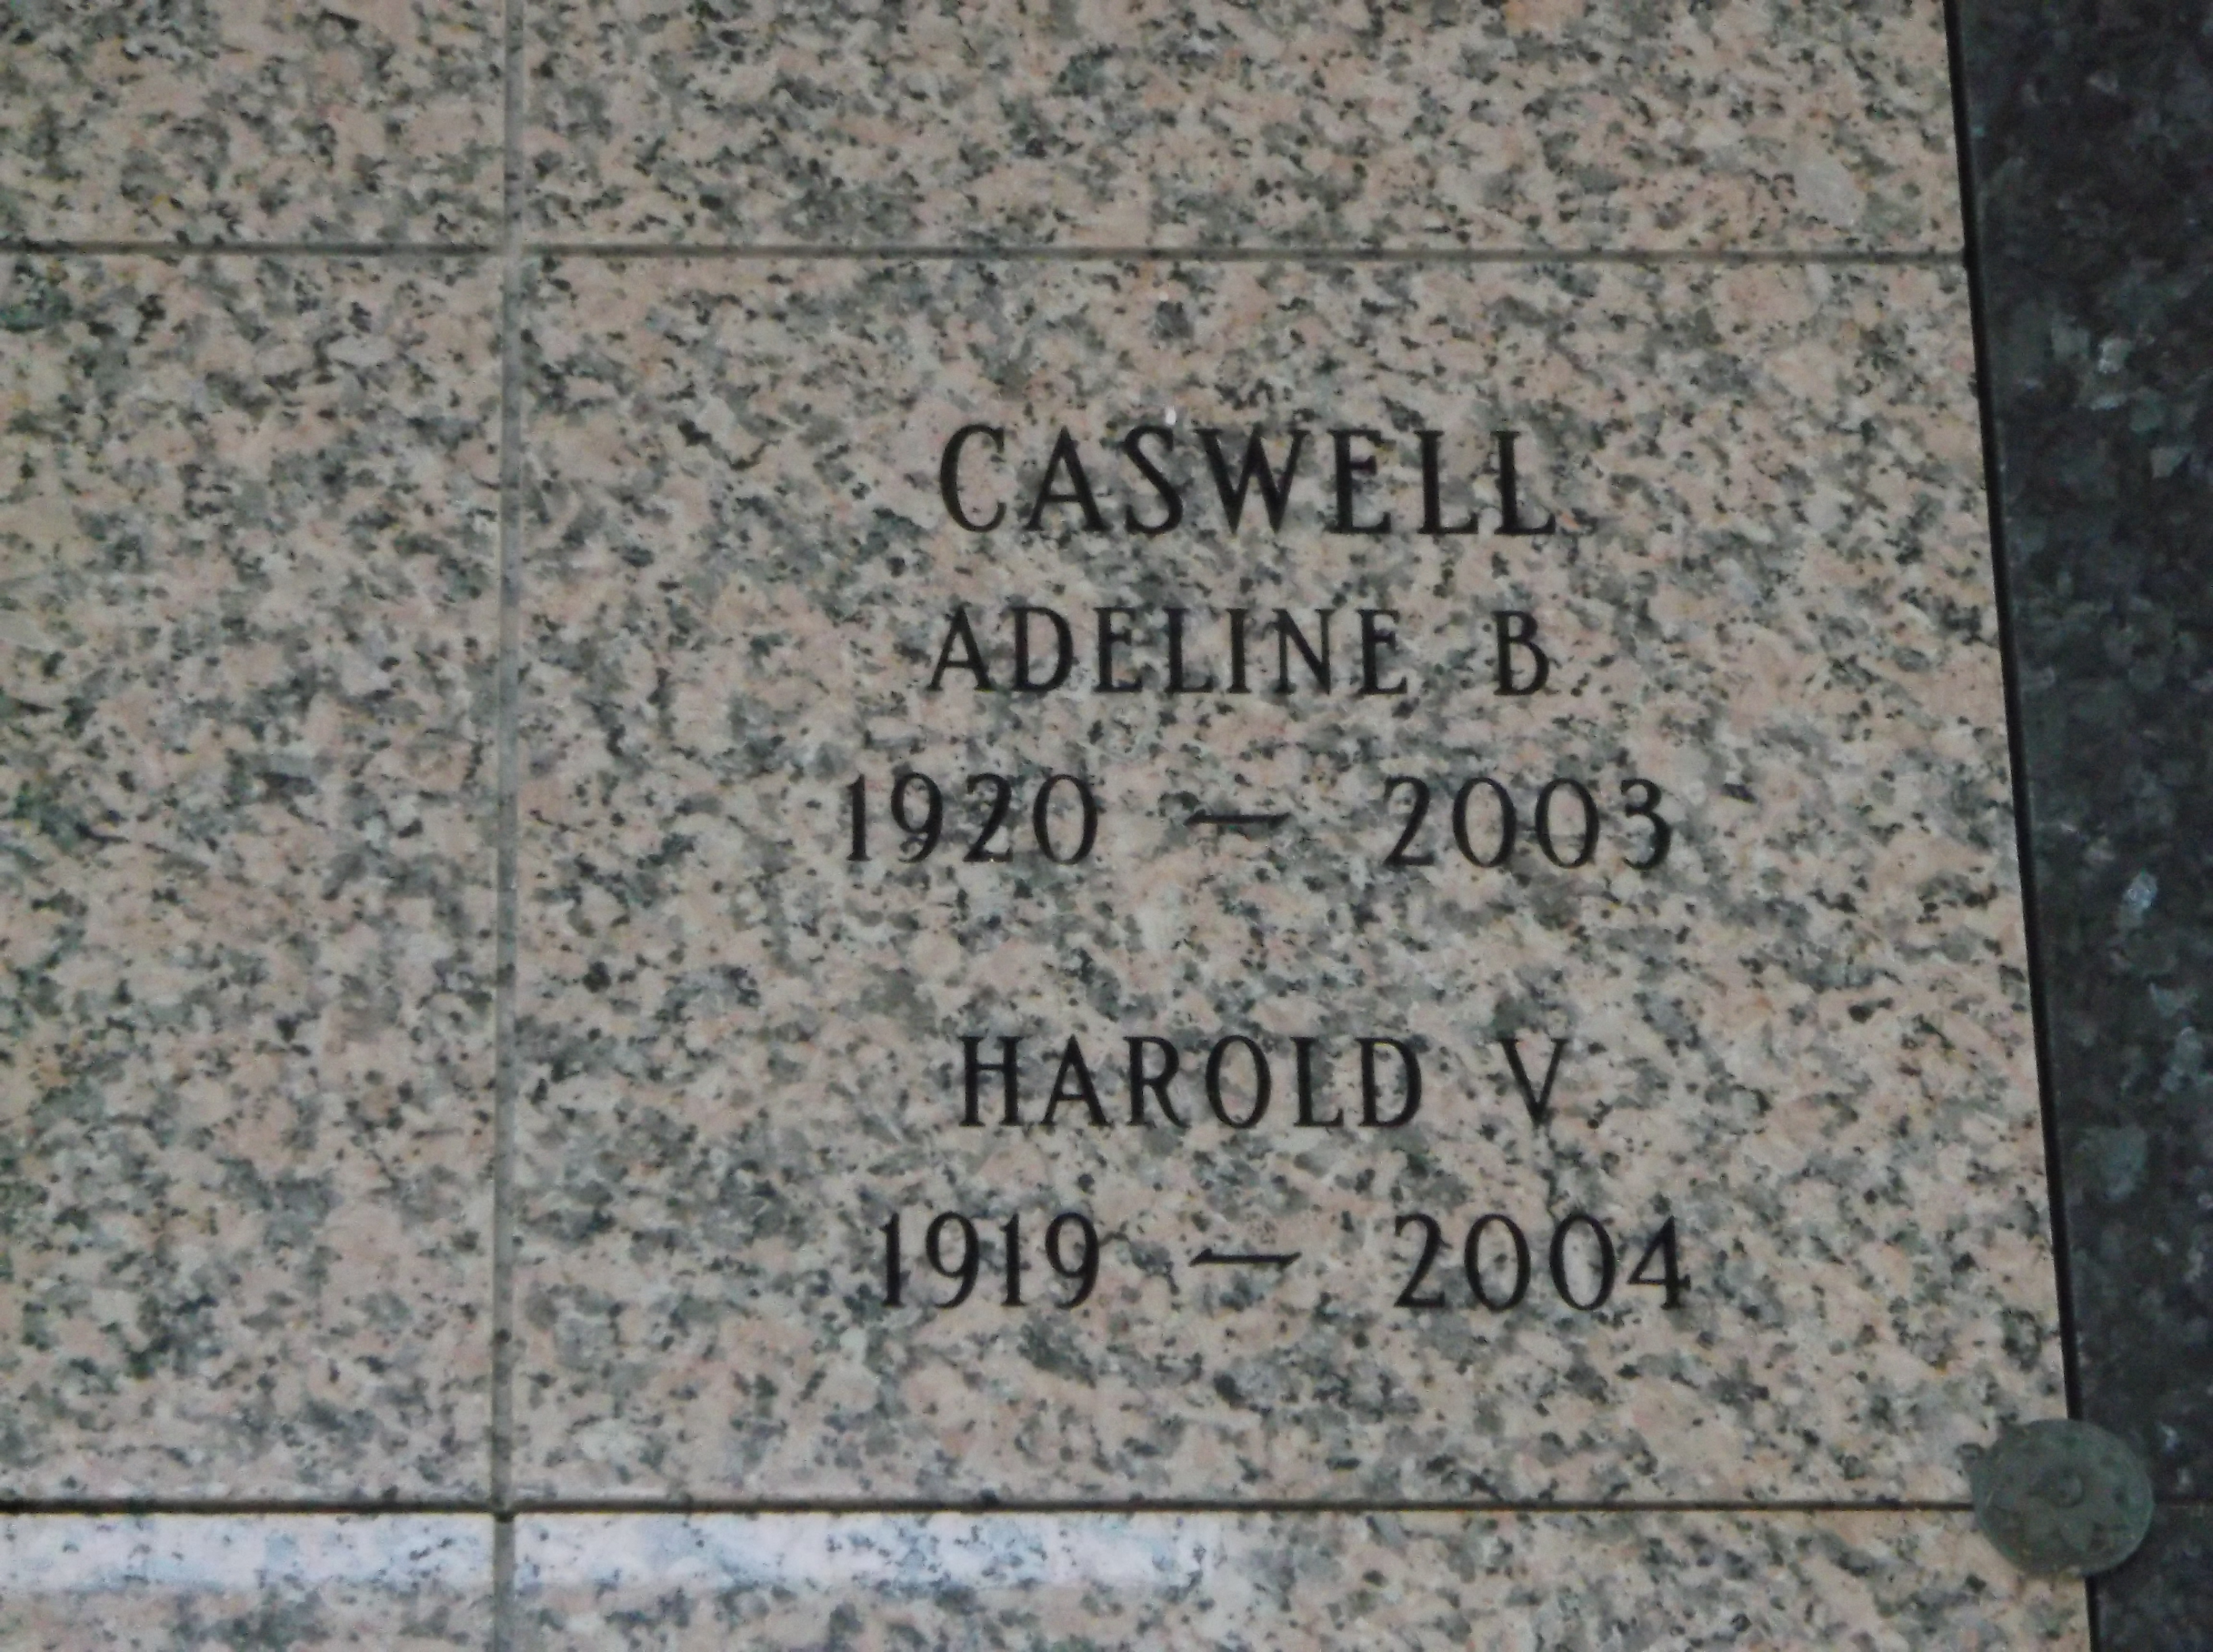 Adeline B Caswell